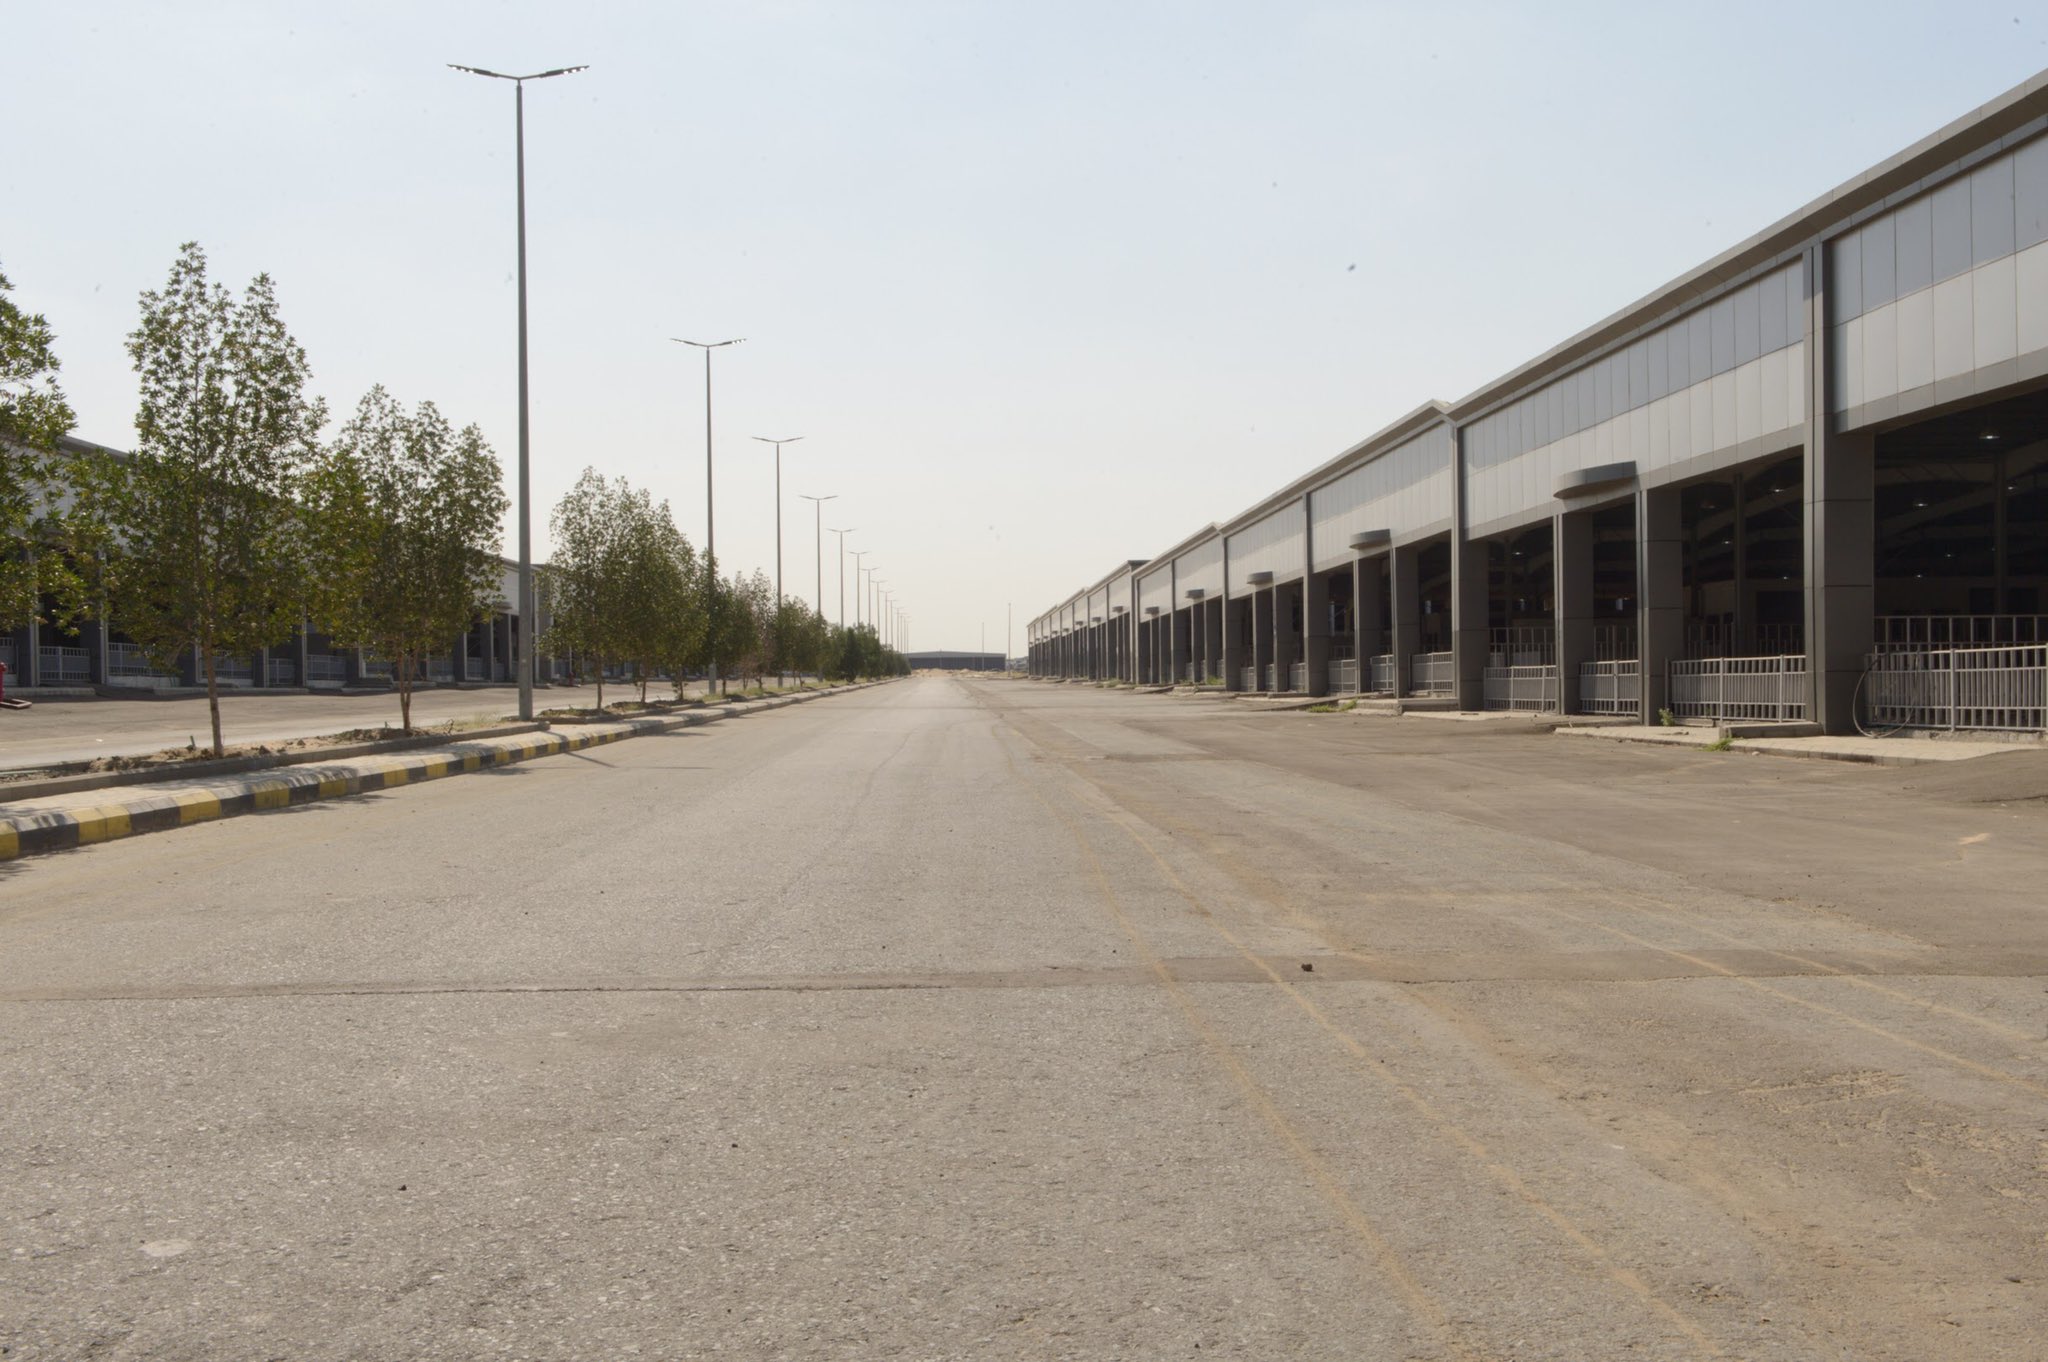 "بالصور" افتتاح مدينة السيارات الأكبر بالمنطقة في عكيشية مكة 5